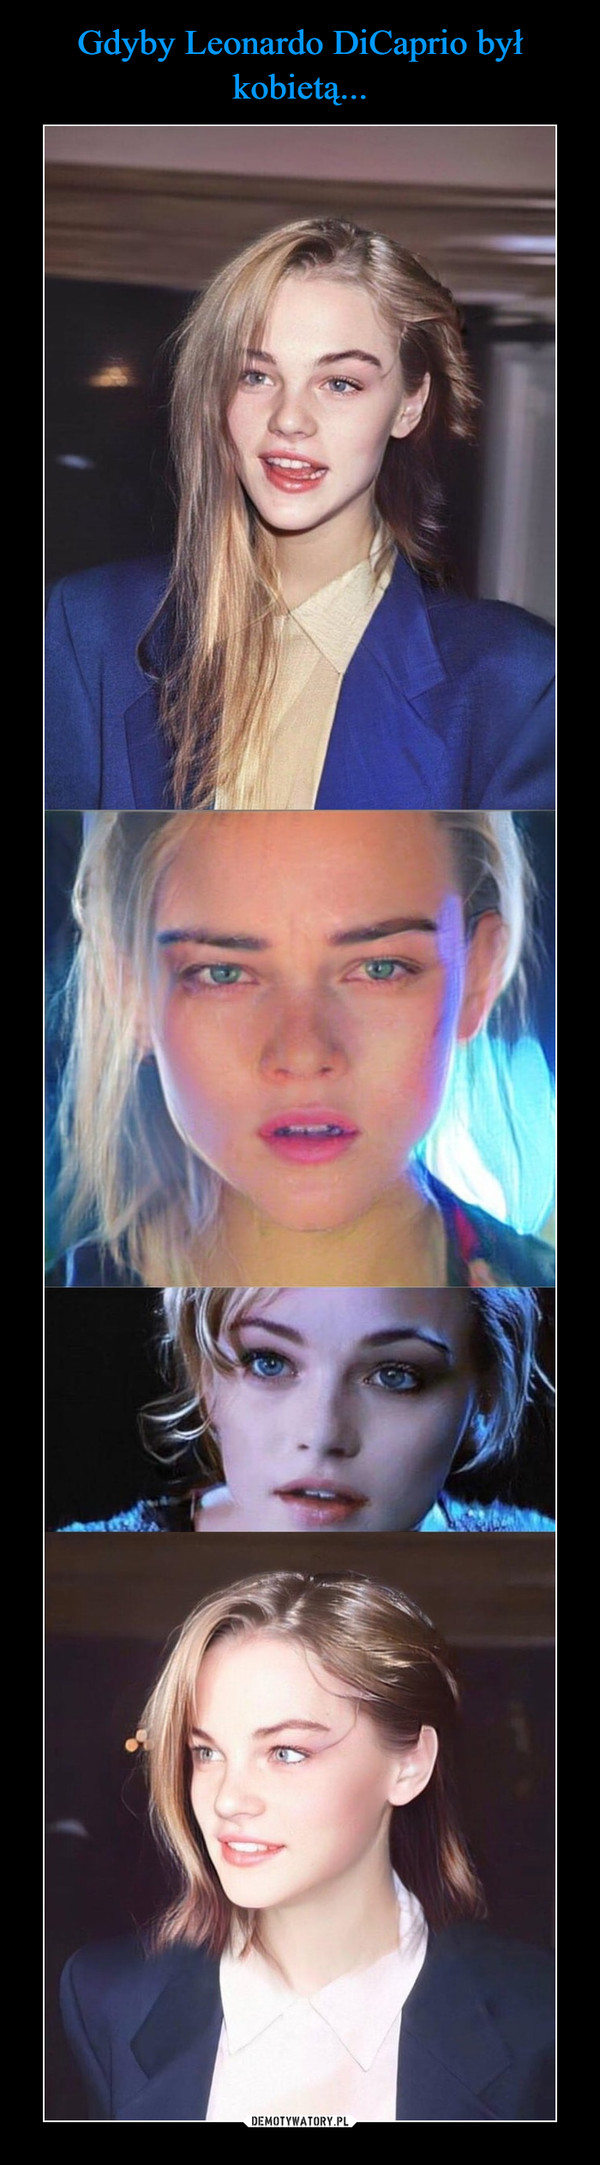 Gdyby Leonardo DiCaprio był kobietą...